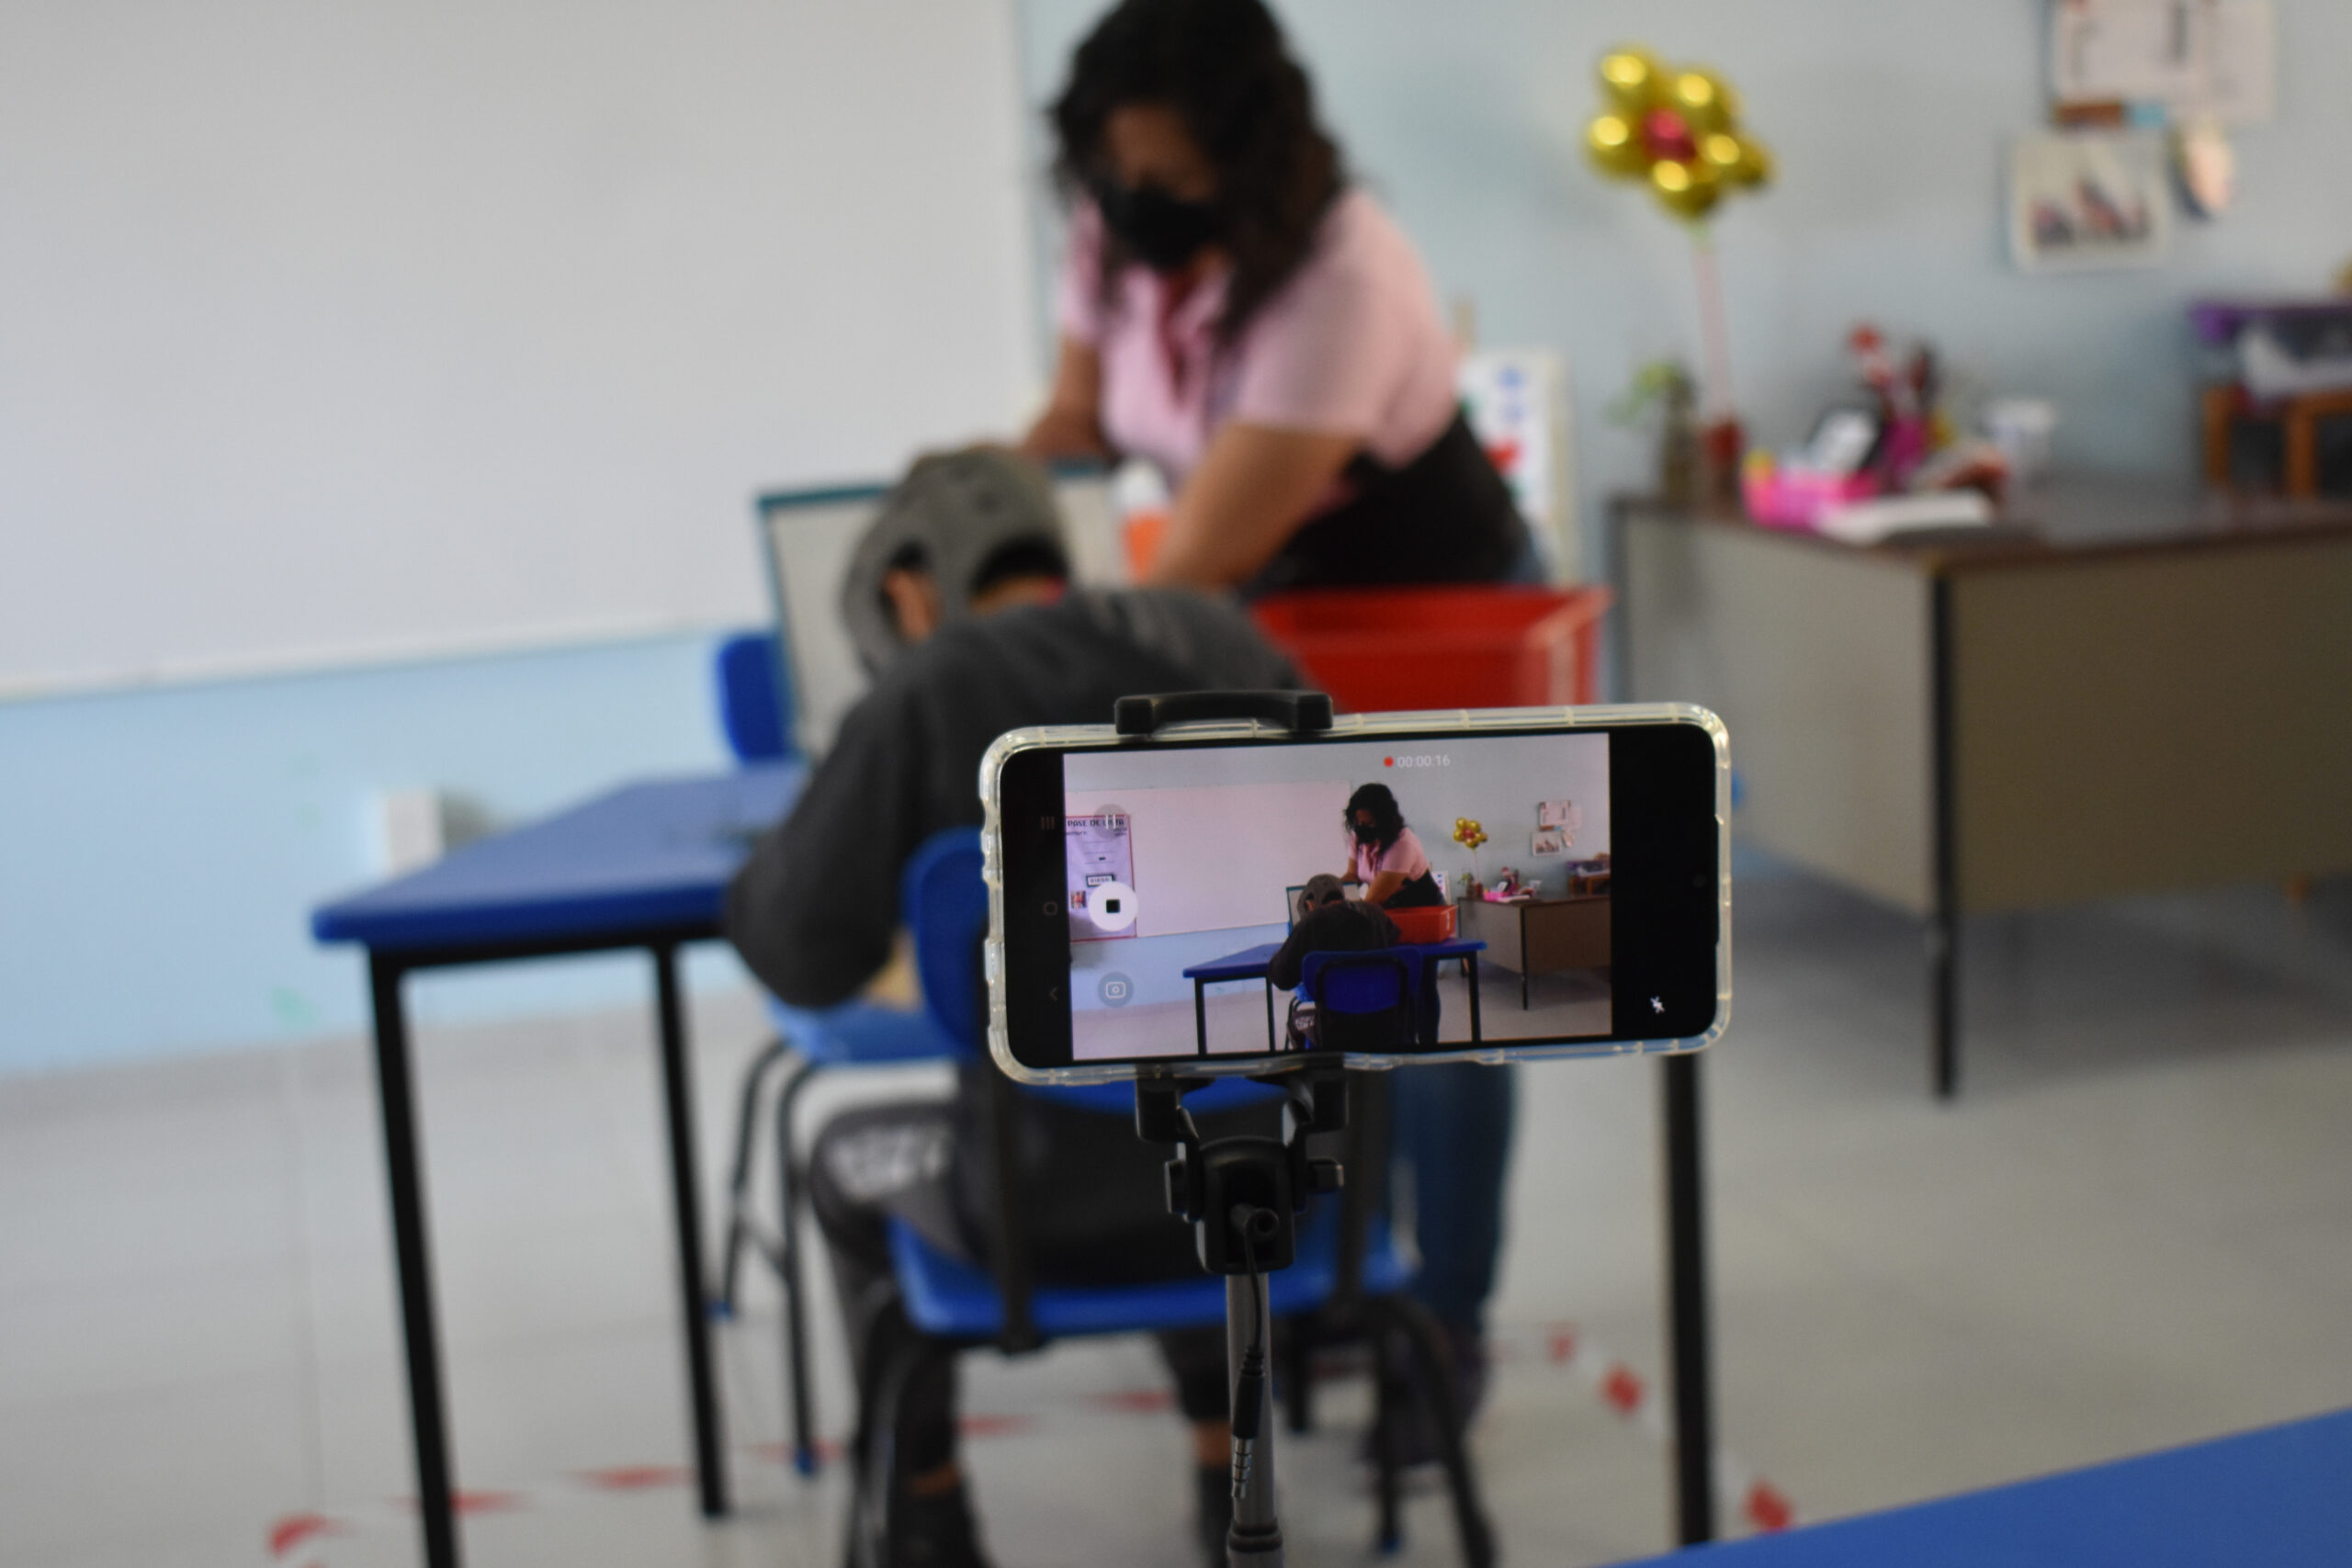 Imagen: En primer plano un celular grabando escena, en segundo plano una maestra enfrente de un estudiante con discapacidad de quien sólo se ve la espalda, ambos trabajan con materiales en la mesa.